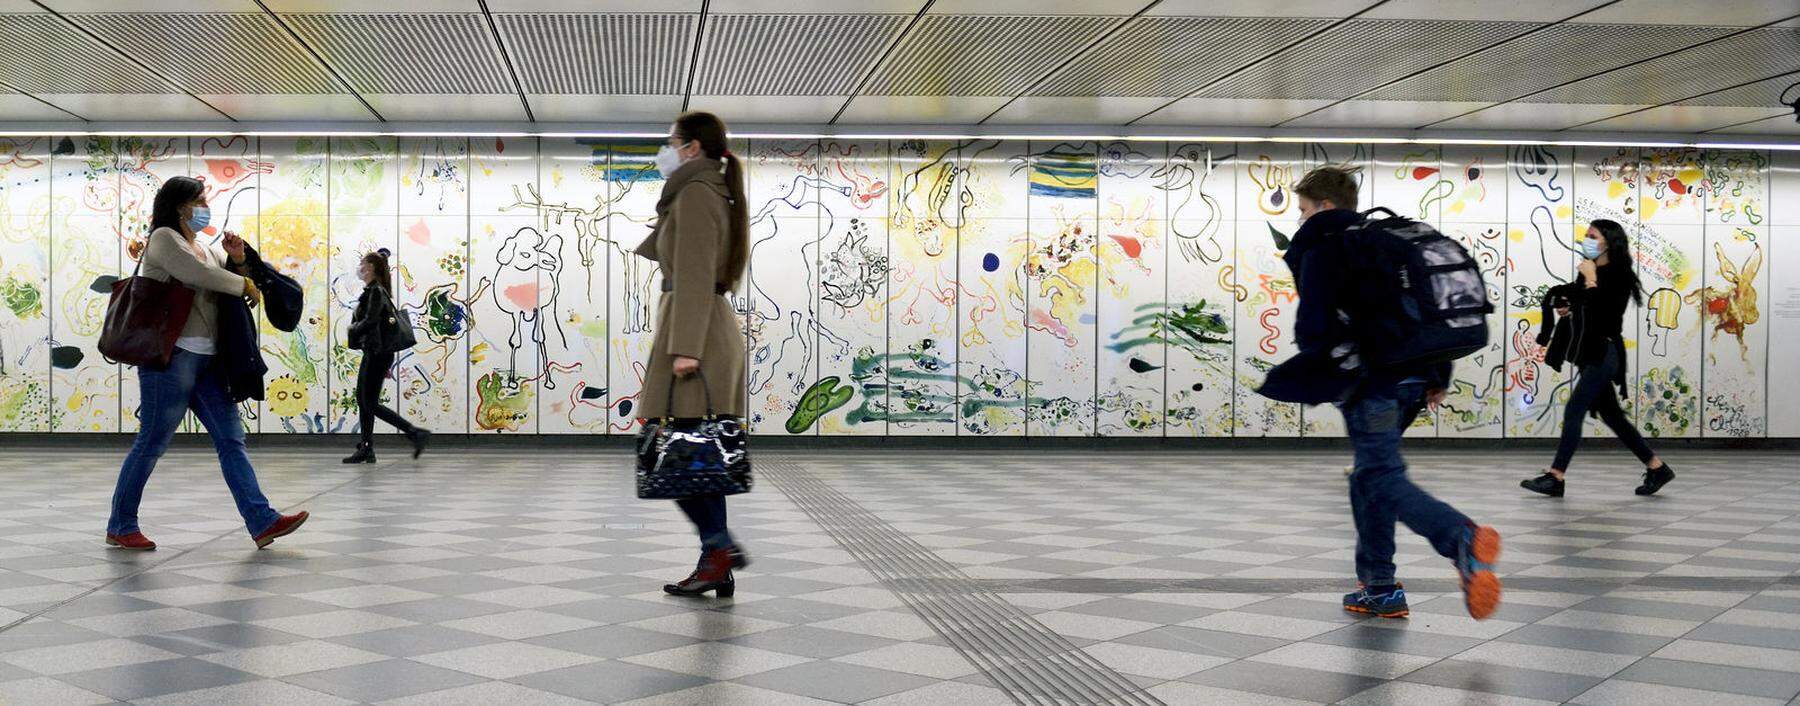 Oswald Oberhubers Kunstinstallation in der U-Bahn-Station Landstraße.